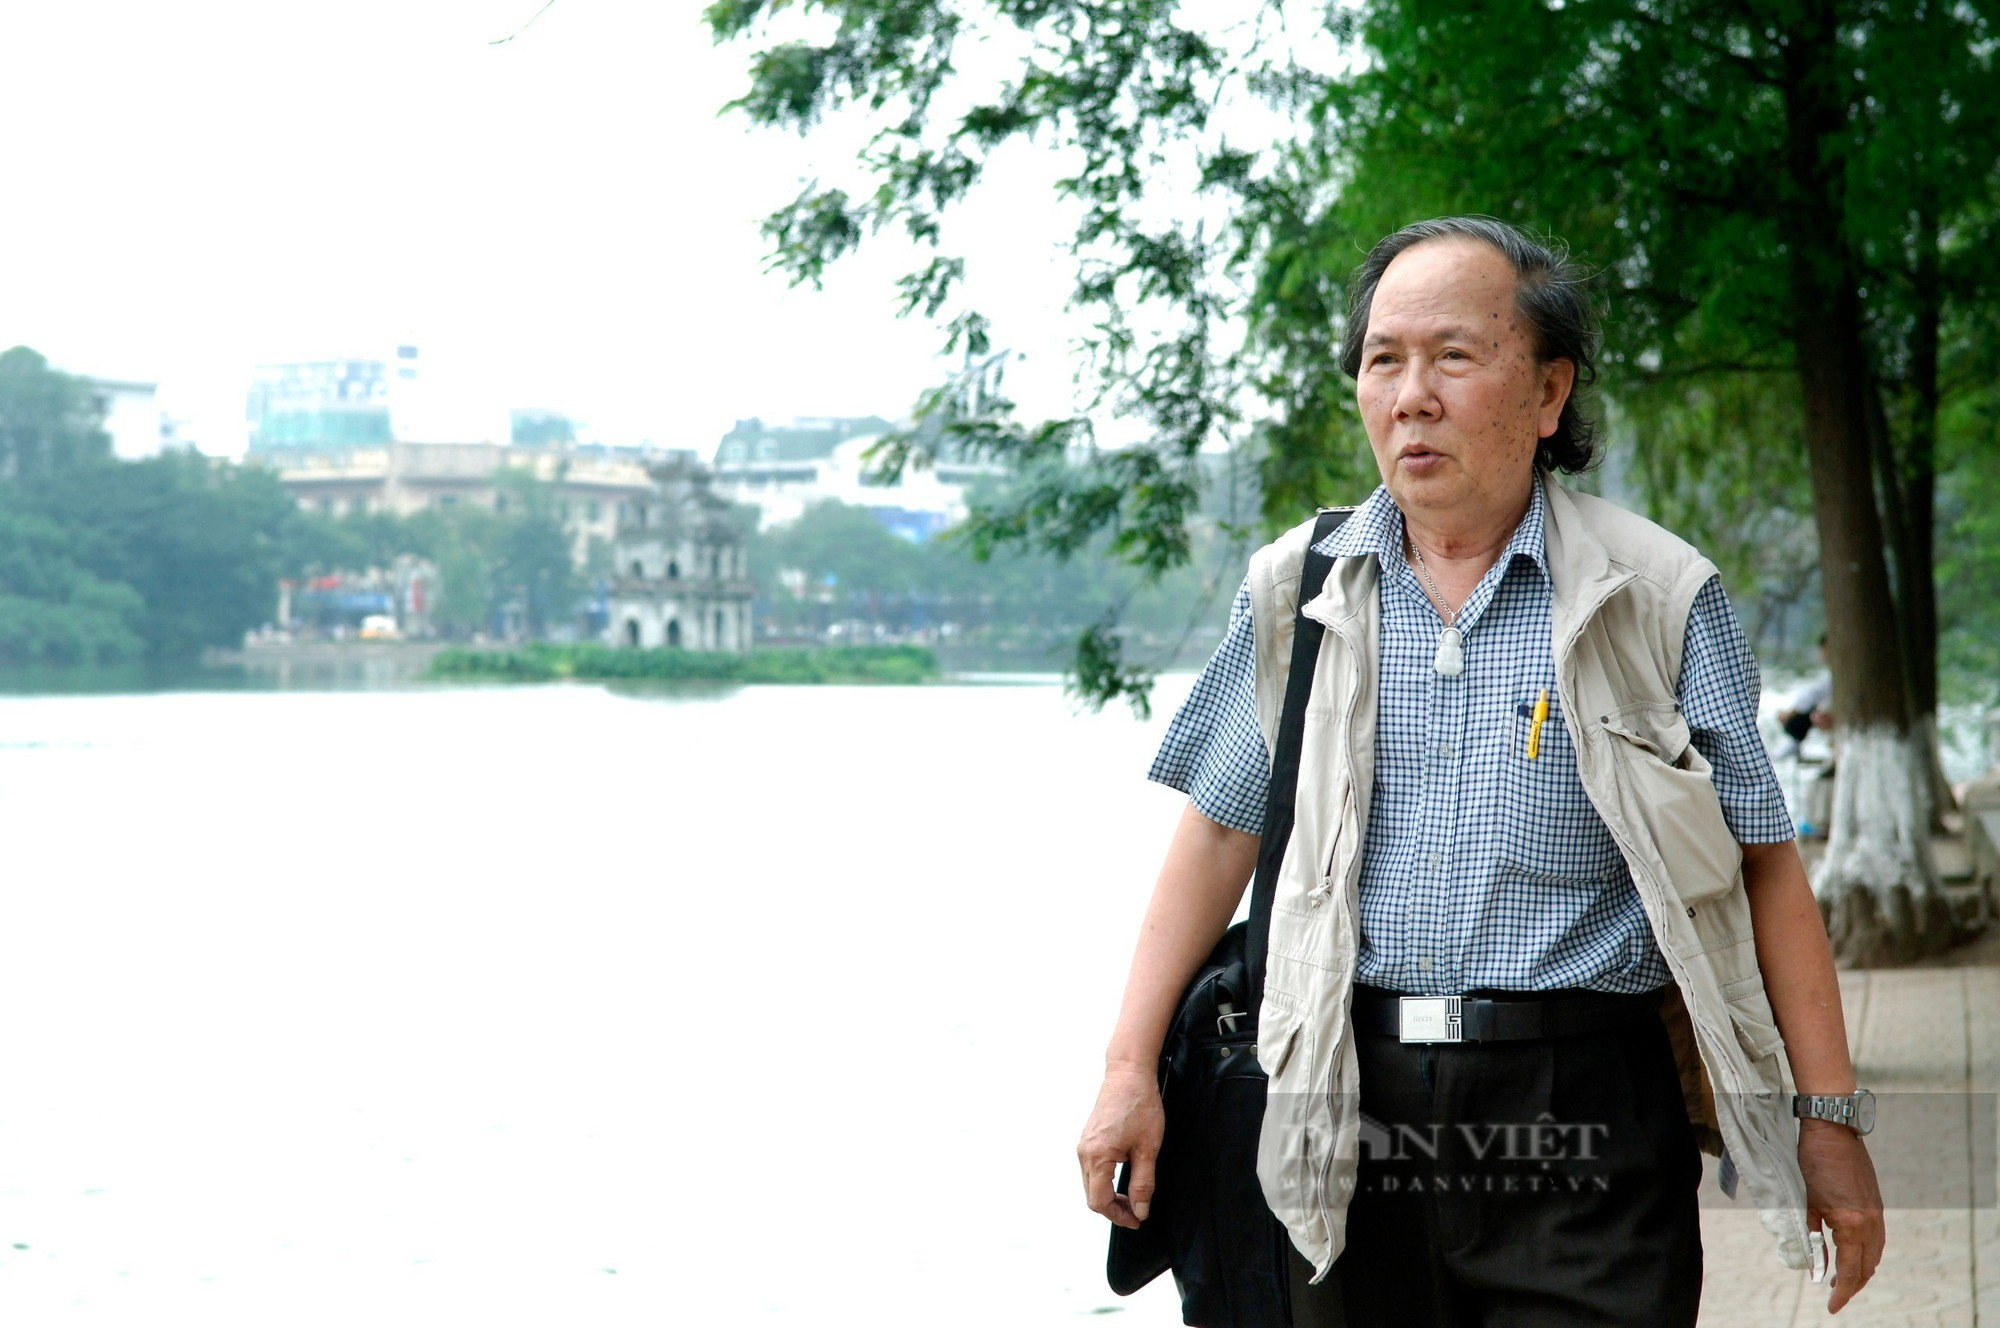 Ký ức Hà Nội: Gần 30 năm gắn bó với cụ rùa ở Hồ Gươm - Ảnh 2.